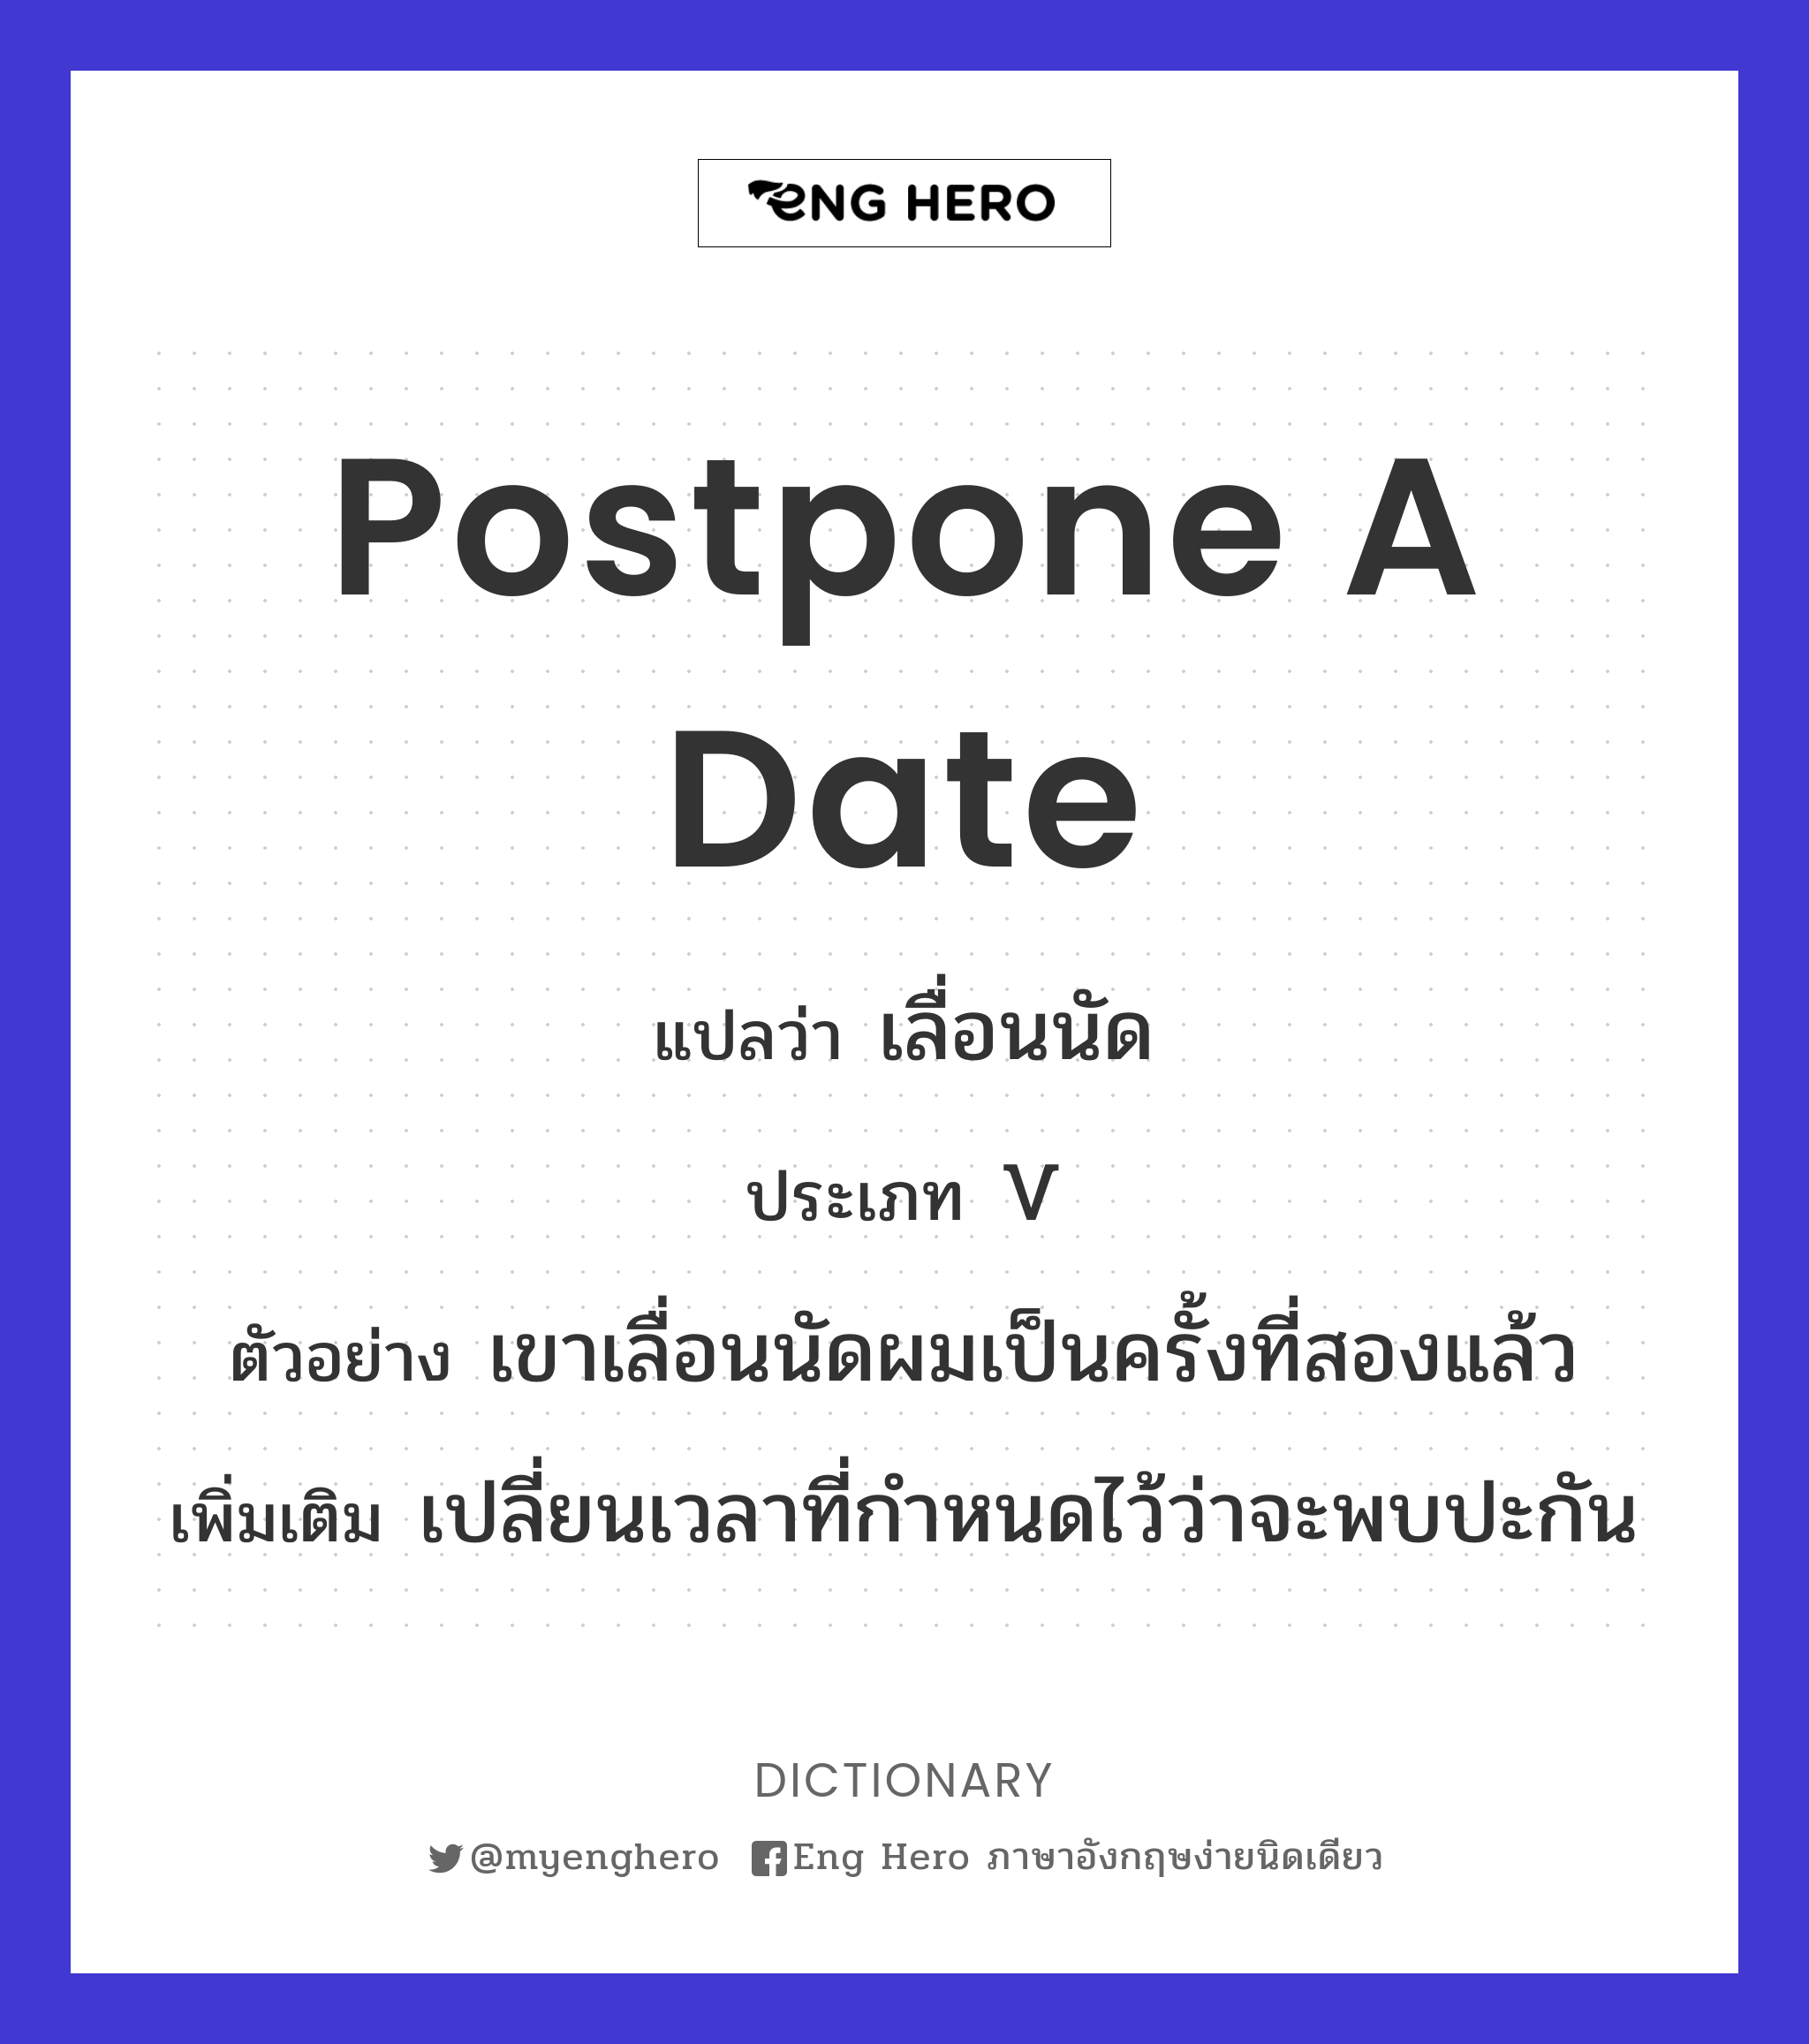 postpone a date